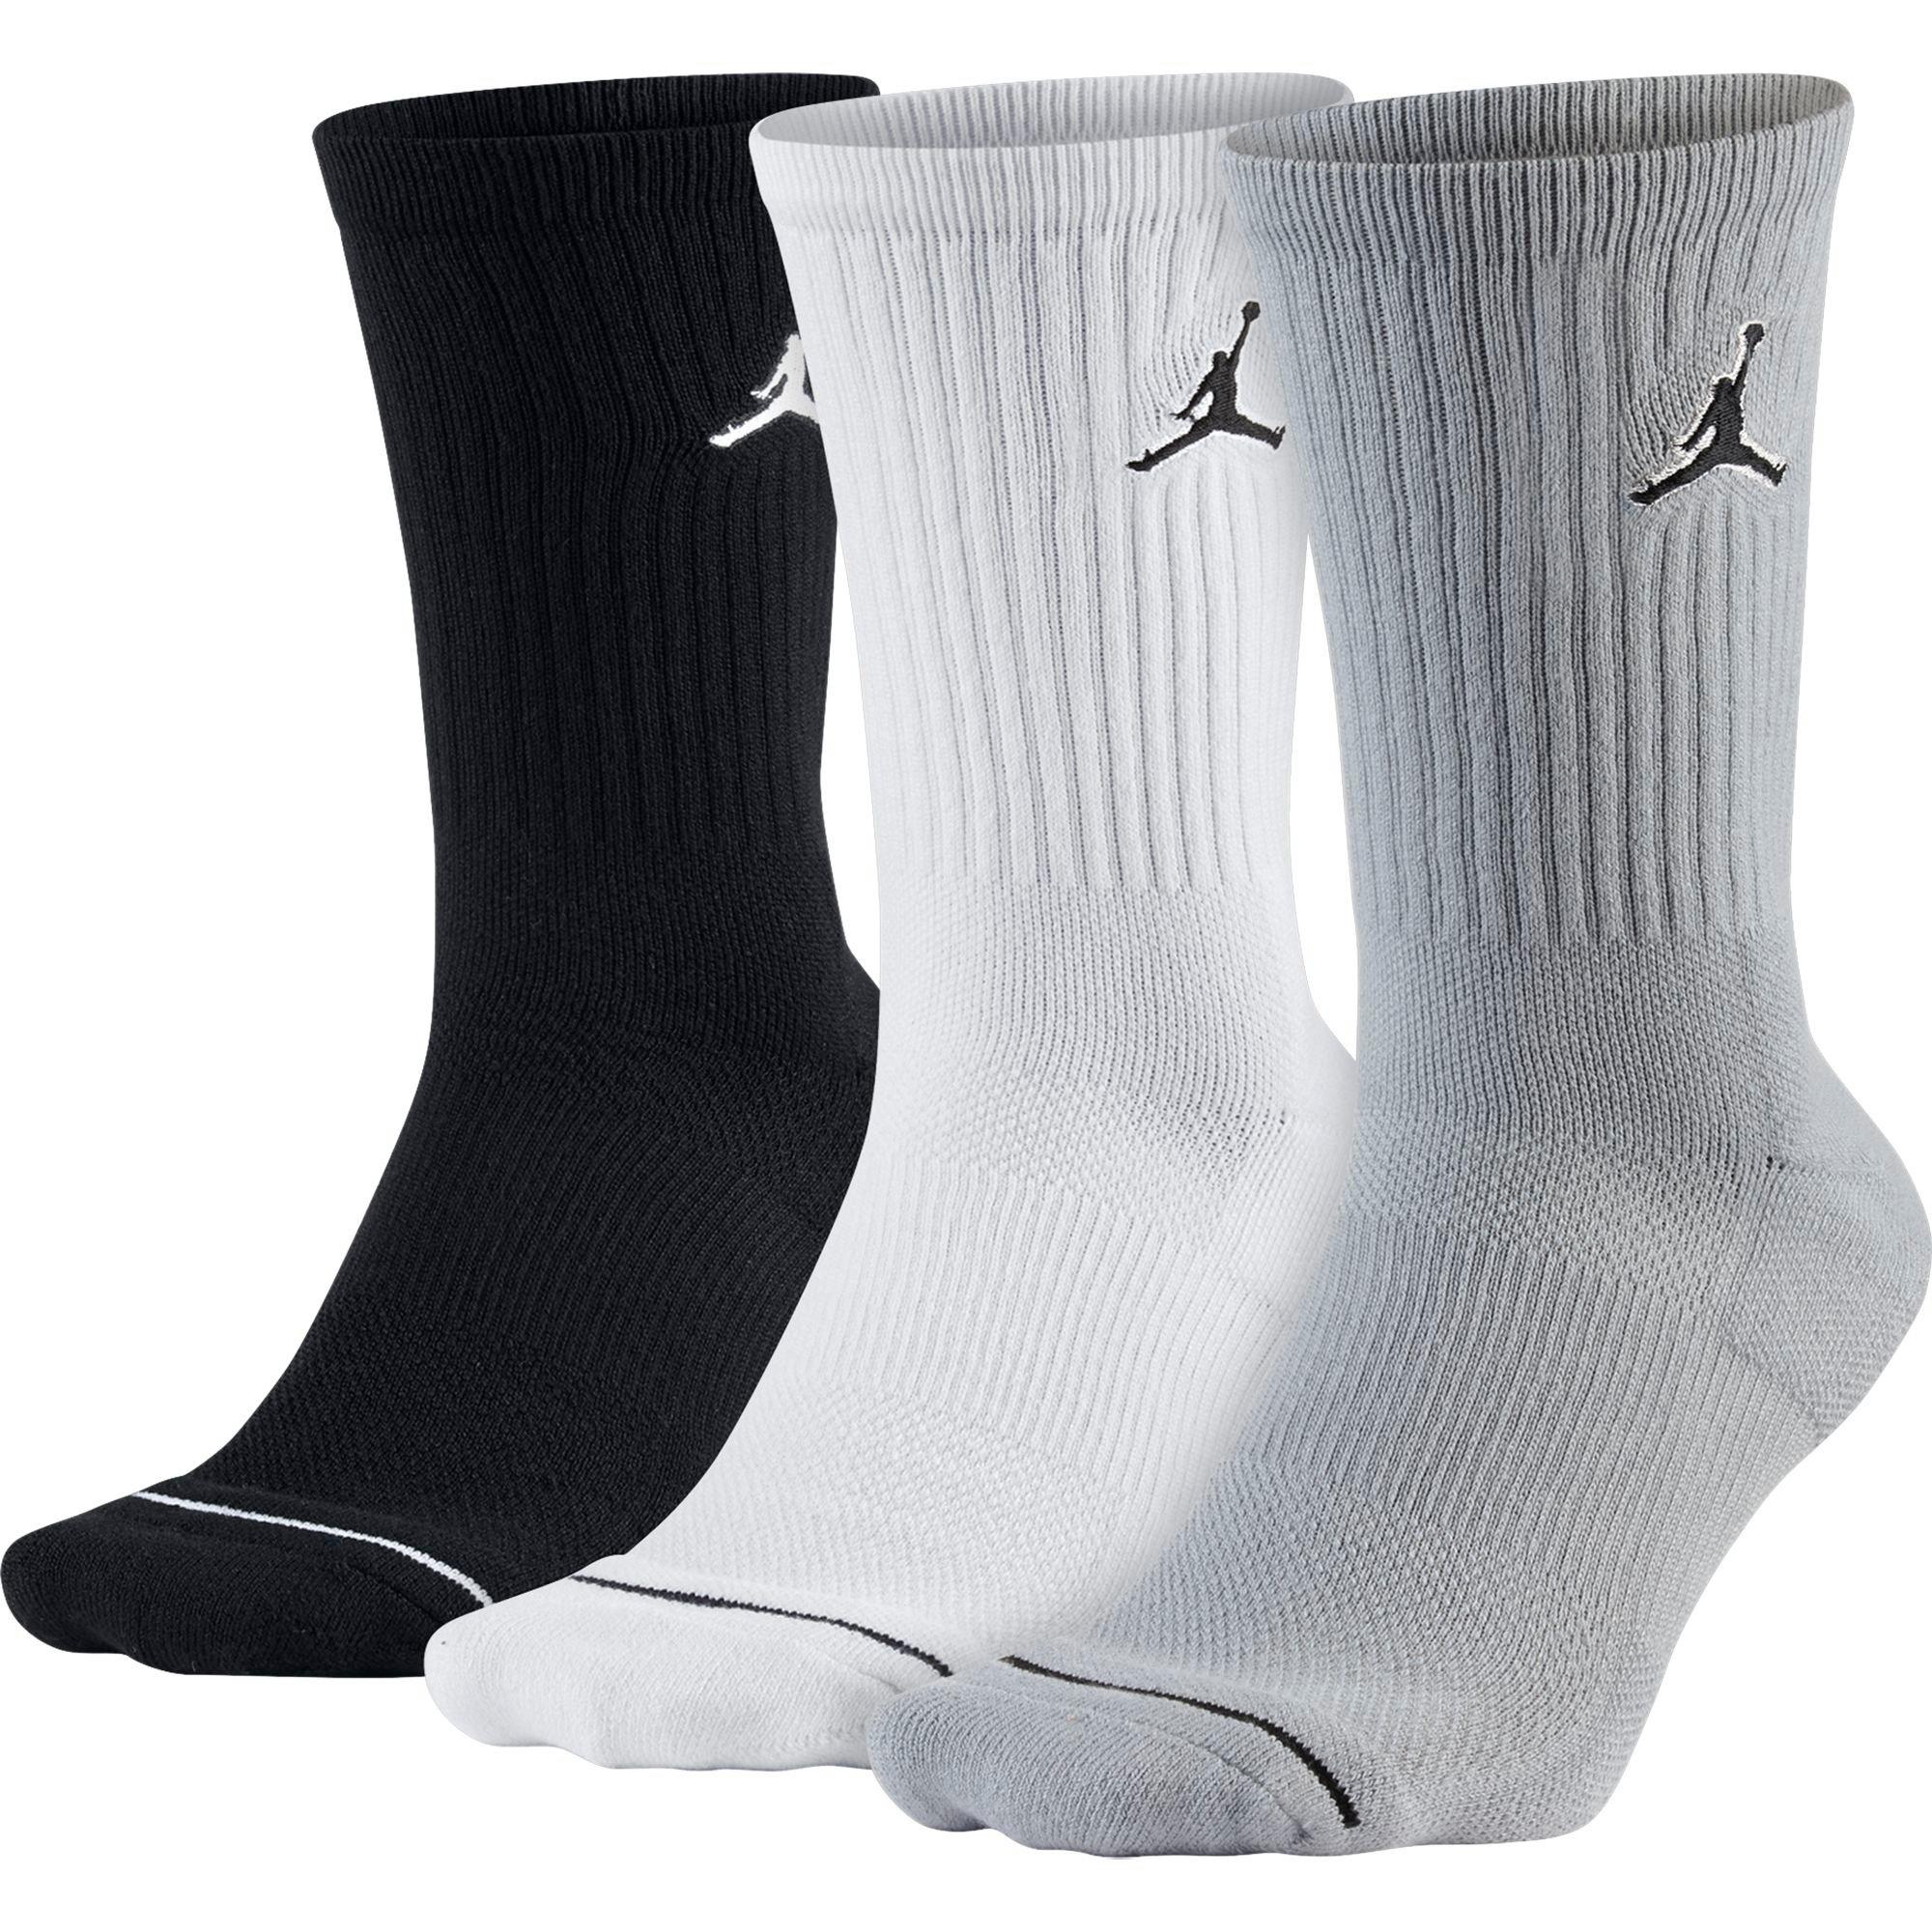 black and grey jordan socks